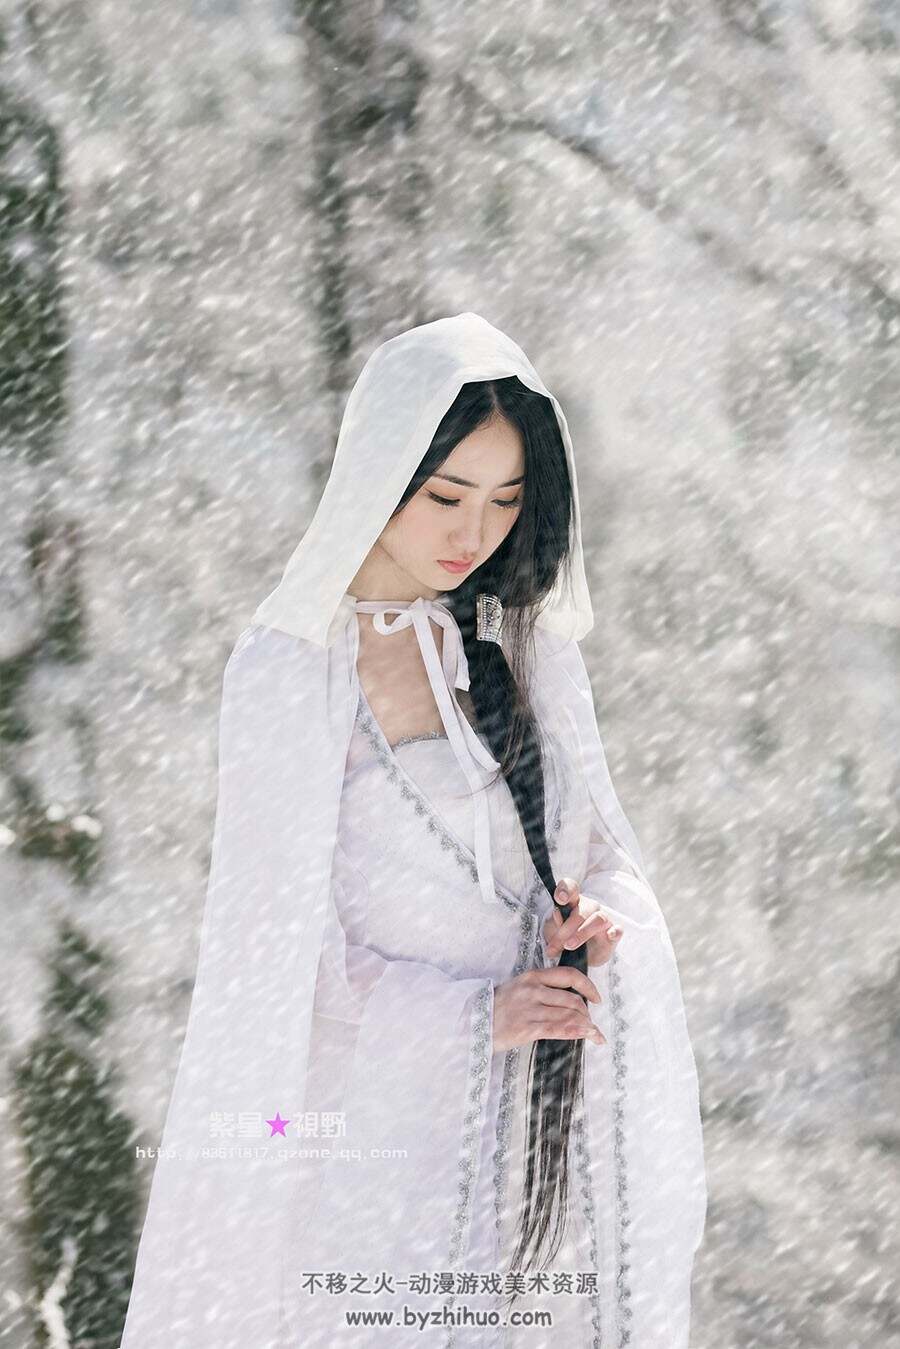 中式古装女模特人体艺用写真摄影素材美术参考 828P